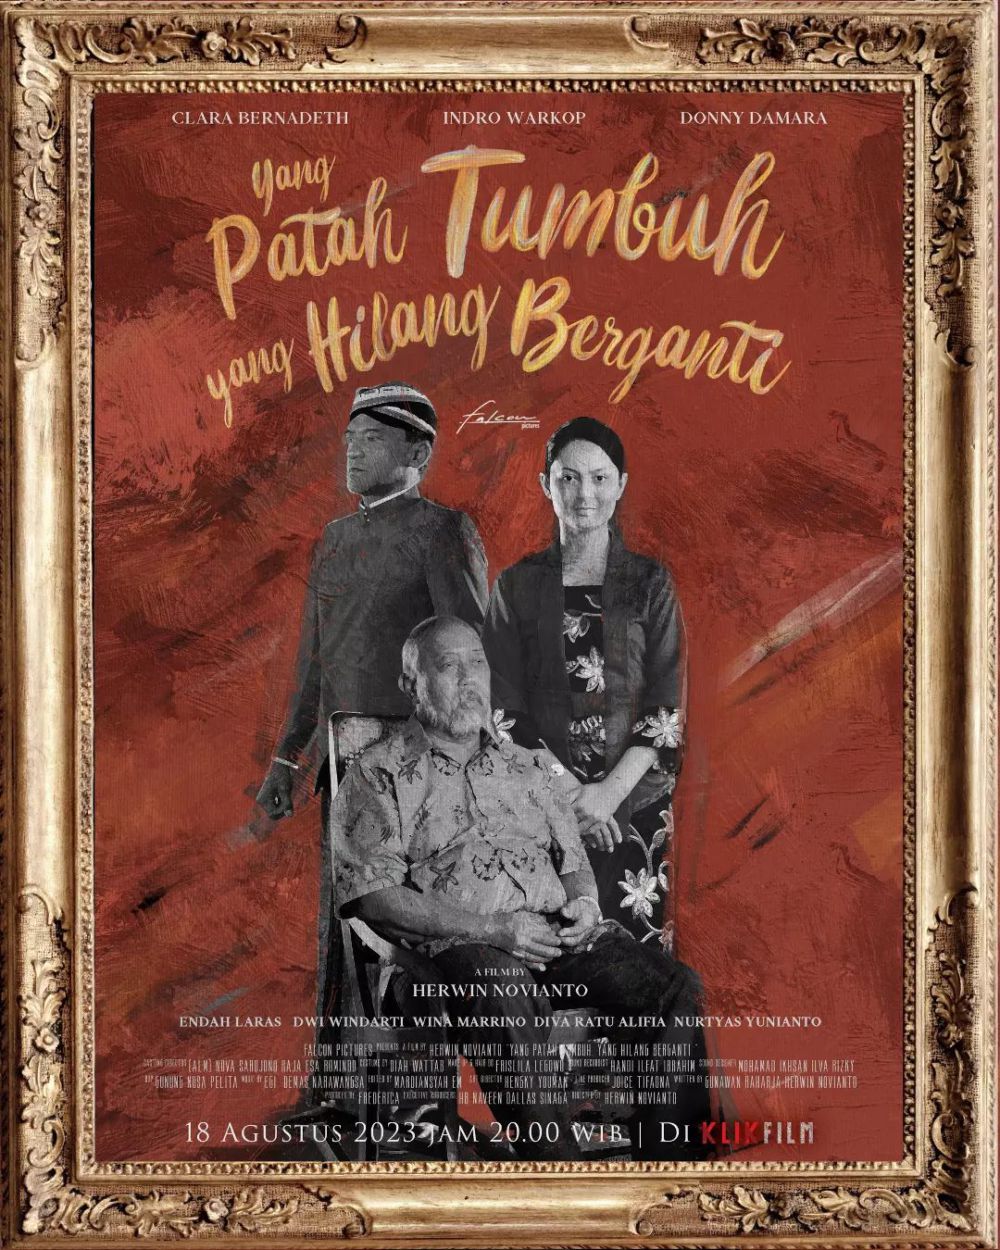 5 Film dan Series Indonesia Angkat Cerita Tentang Lupa Ingatan